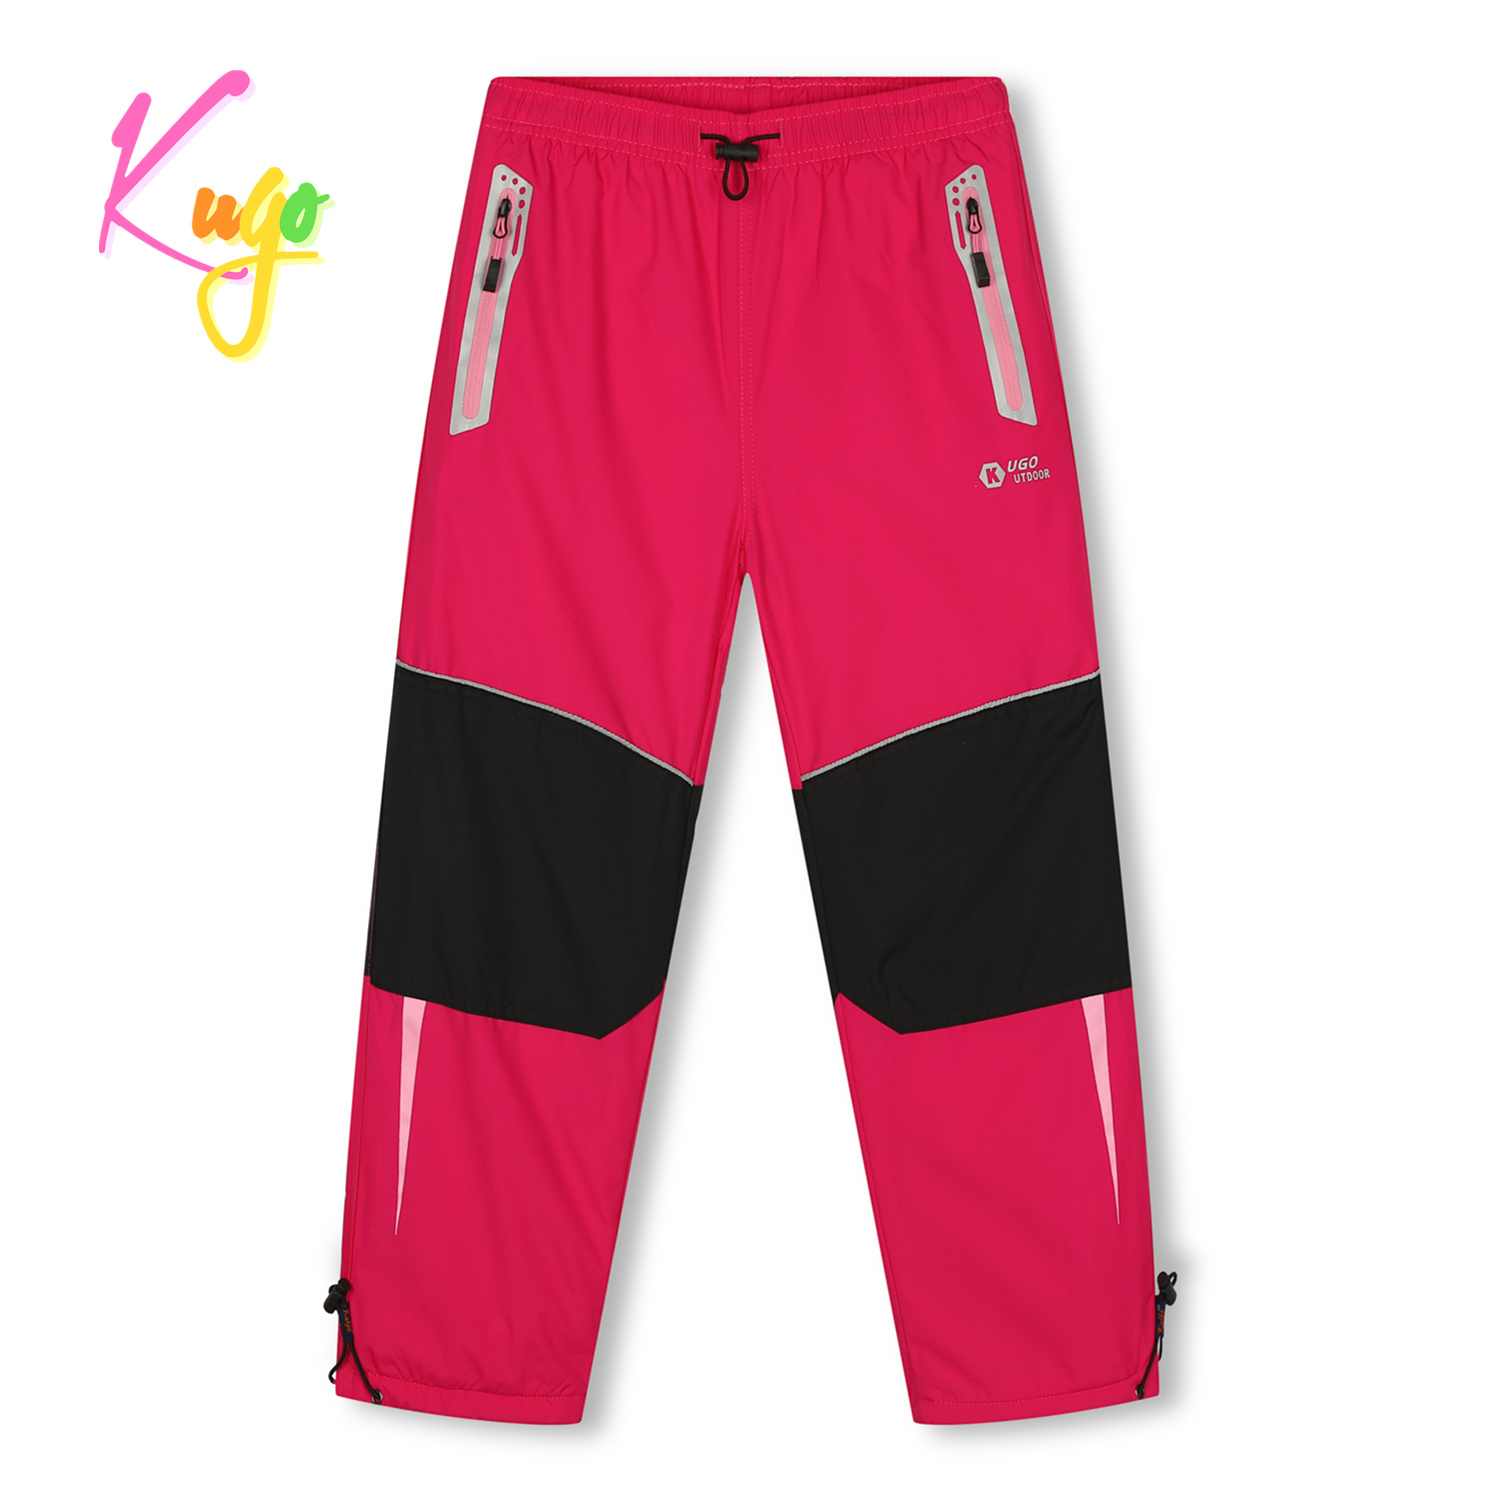 Dívčí šusťákové kalhoty, zateplené - KUGO DK7132, růžová Barva: Růžová, Velikost: 128